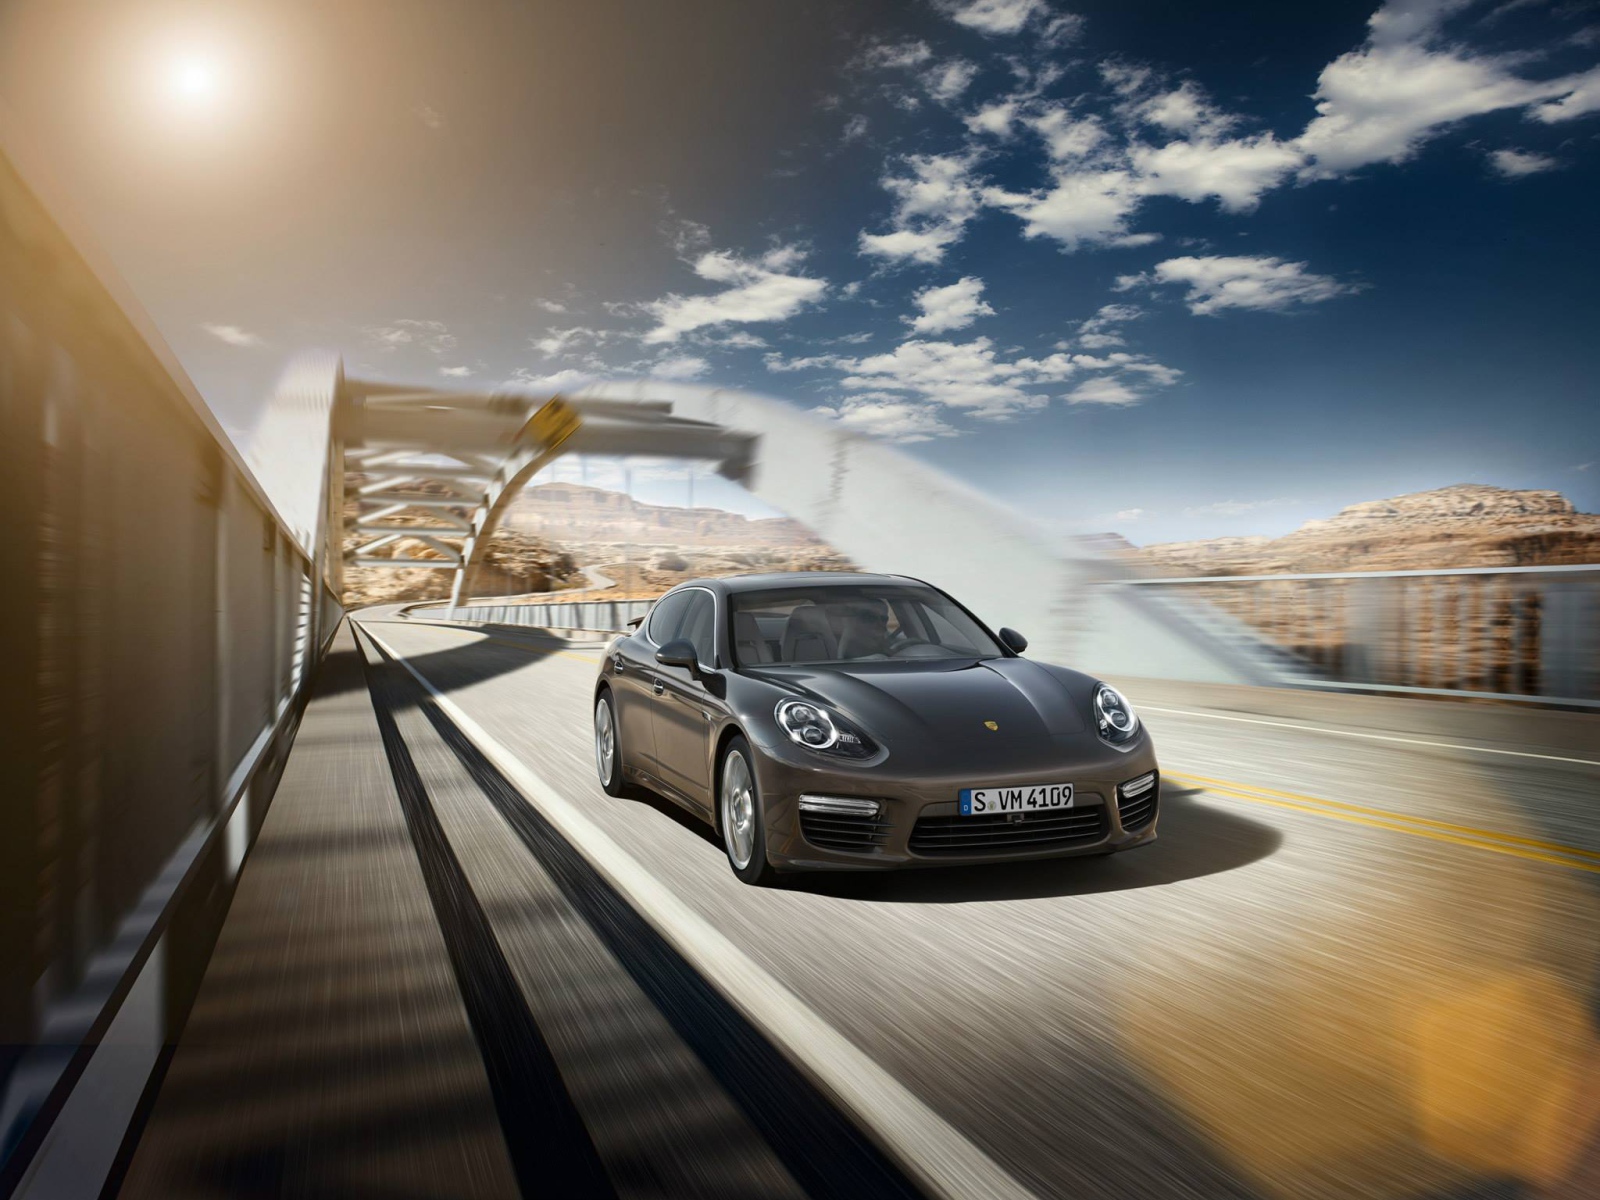 2014 Porsche Panamera Turbo S на мосту